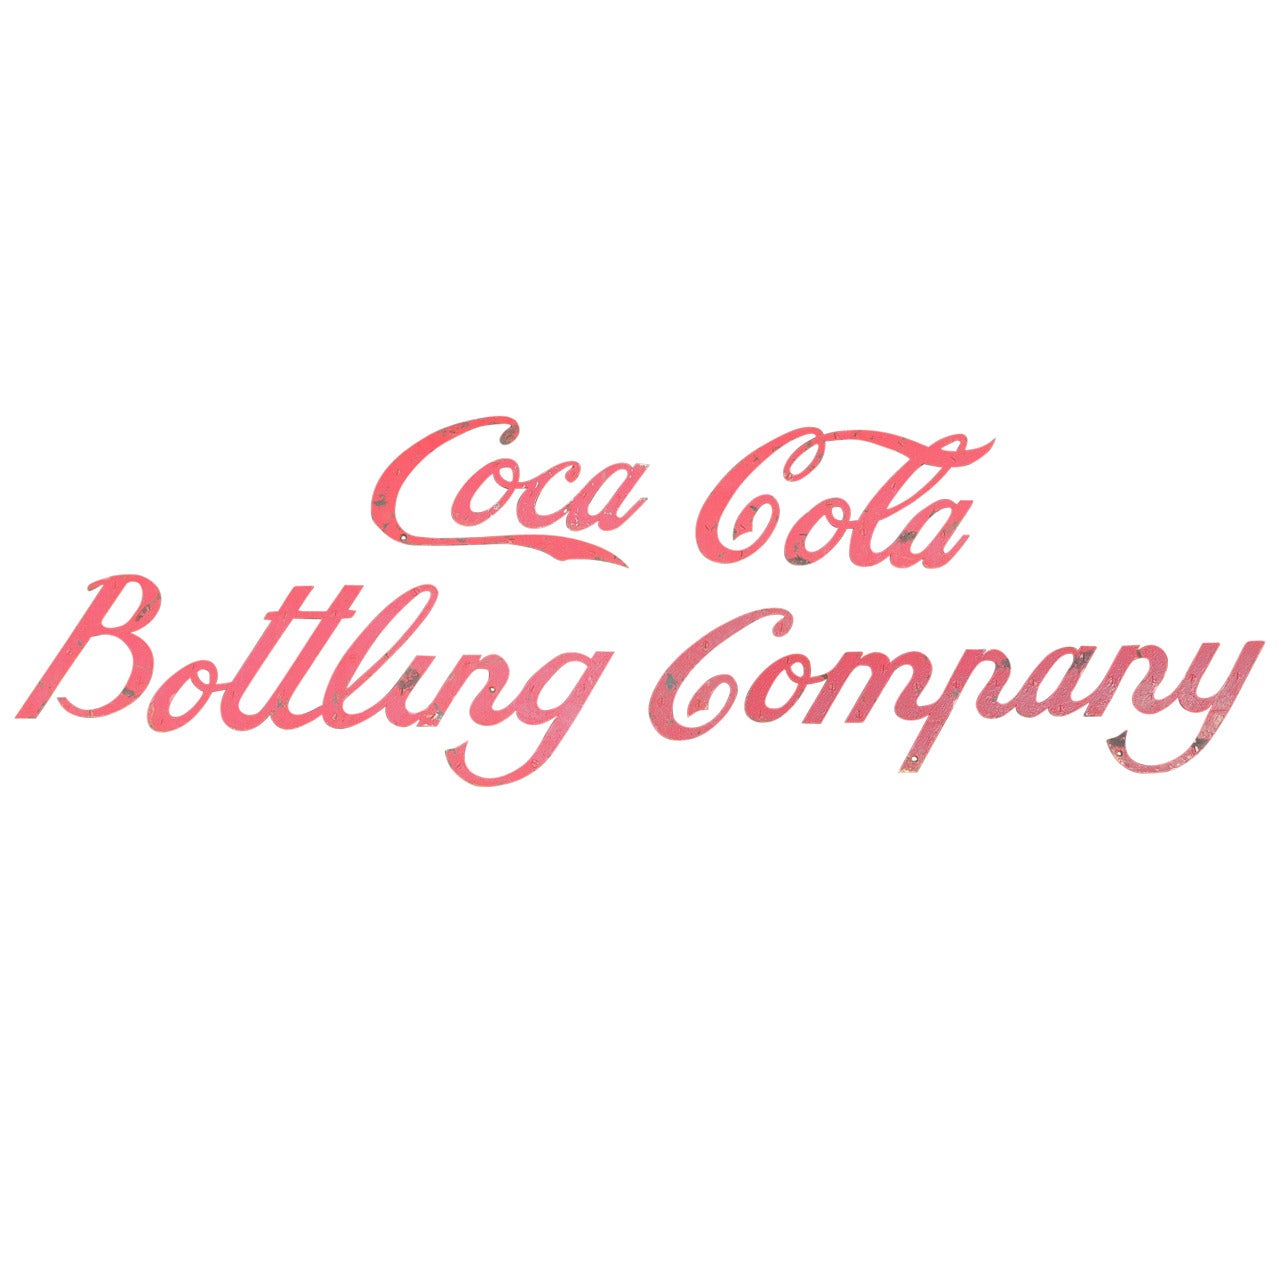 Coca Cola Bottling Company-Schild aus dem frühen 20. Jahrhundert